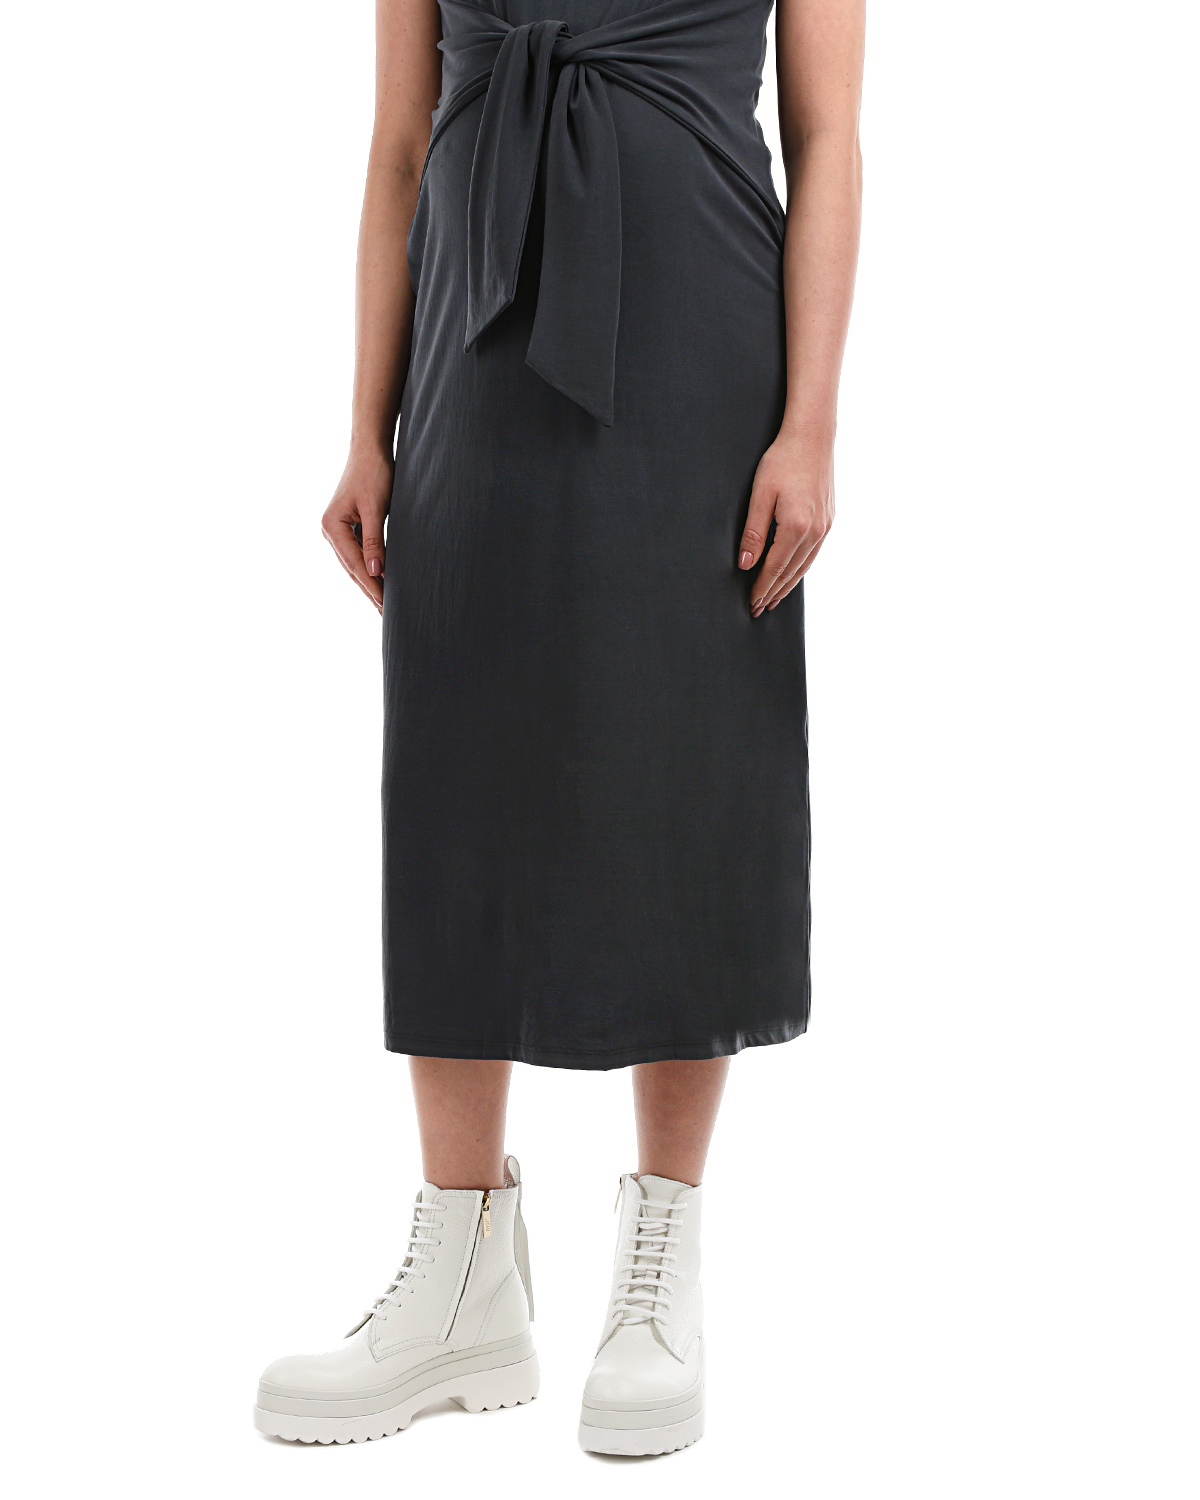 Темно-серое платье с короткими рукавами Attesa, размер 38, цвет серый - фото 8